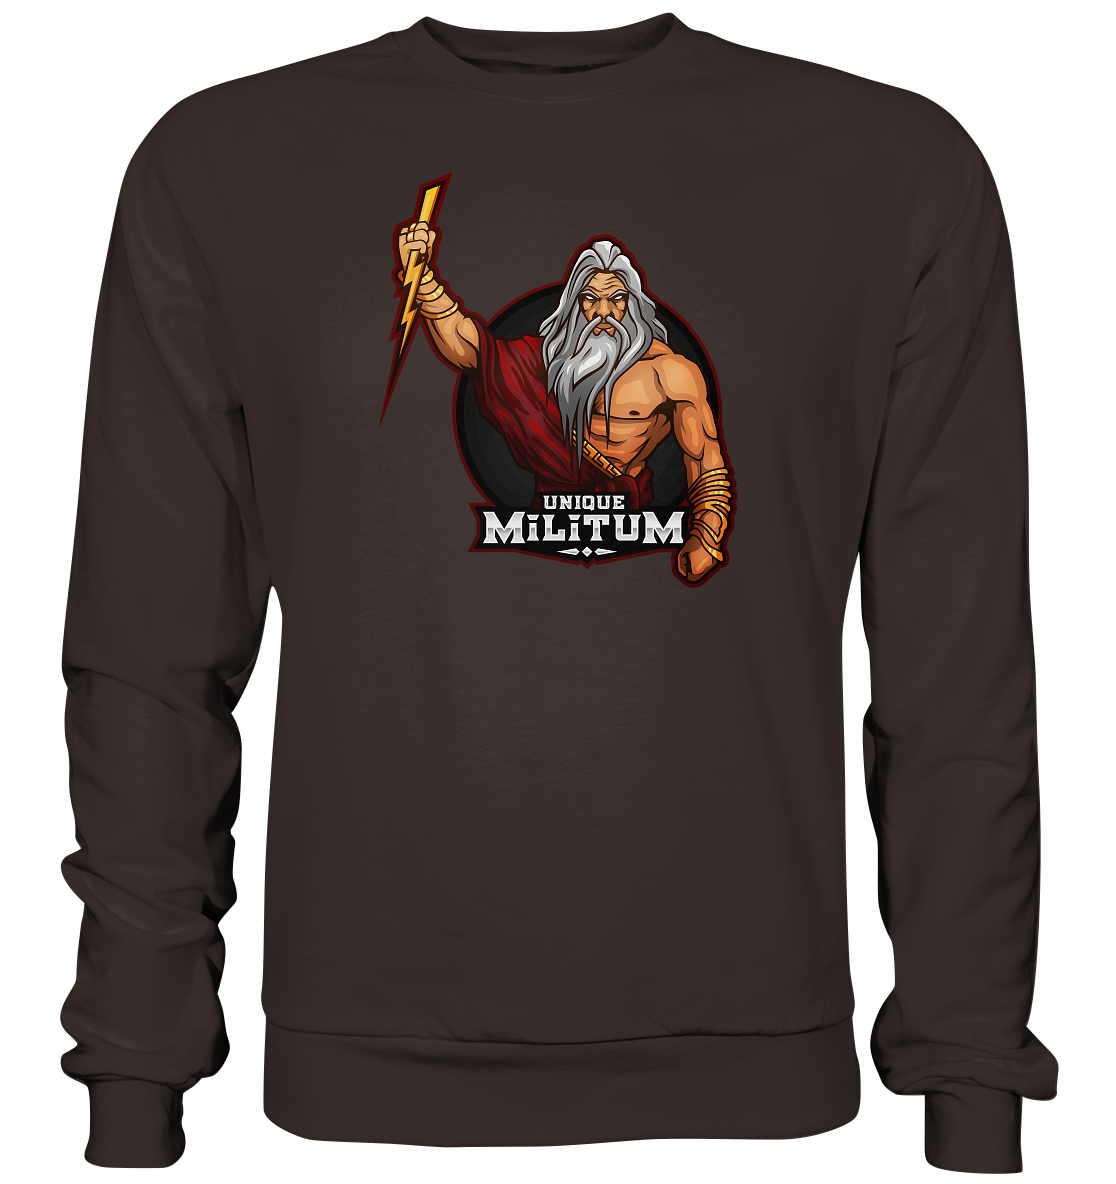 UNIQUE MILITUM - Basic Sweatshirt